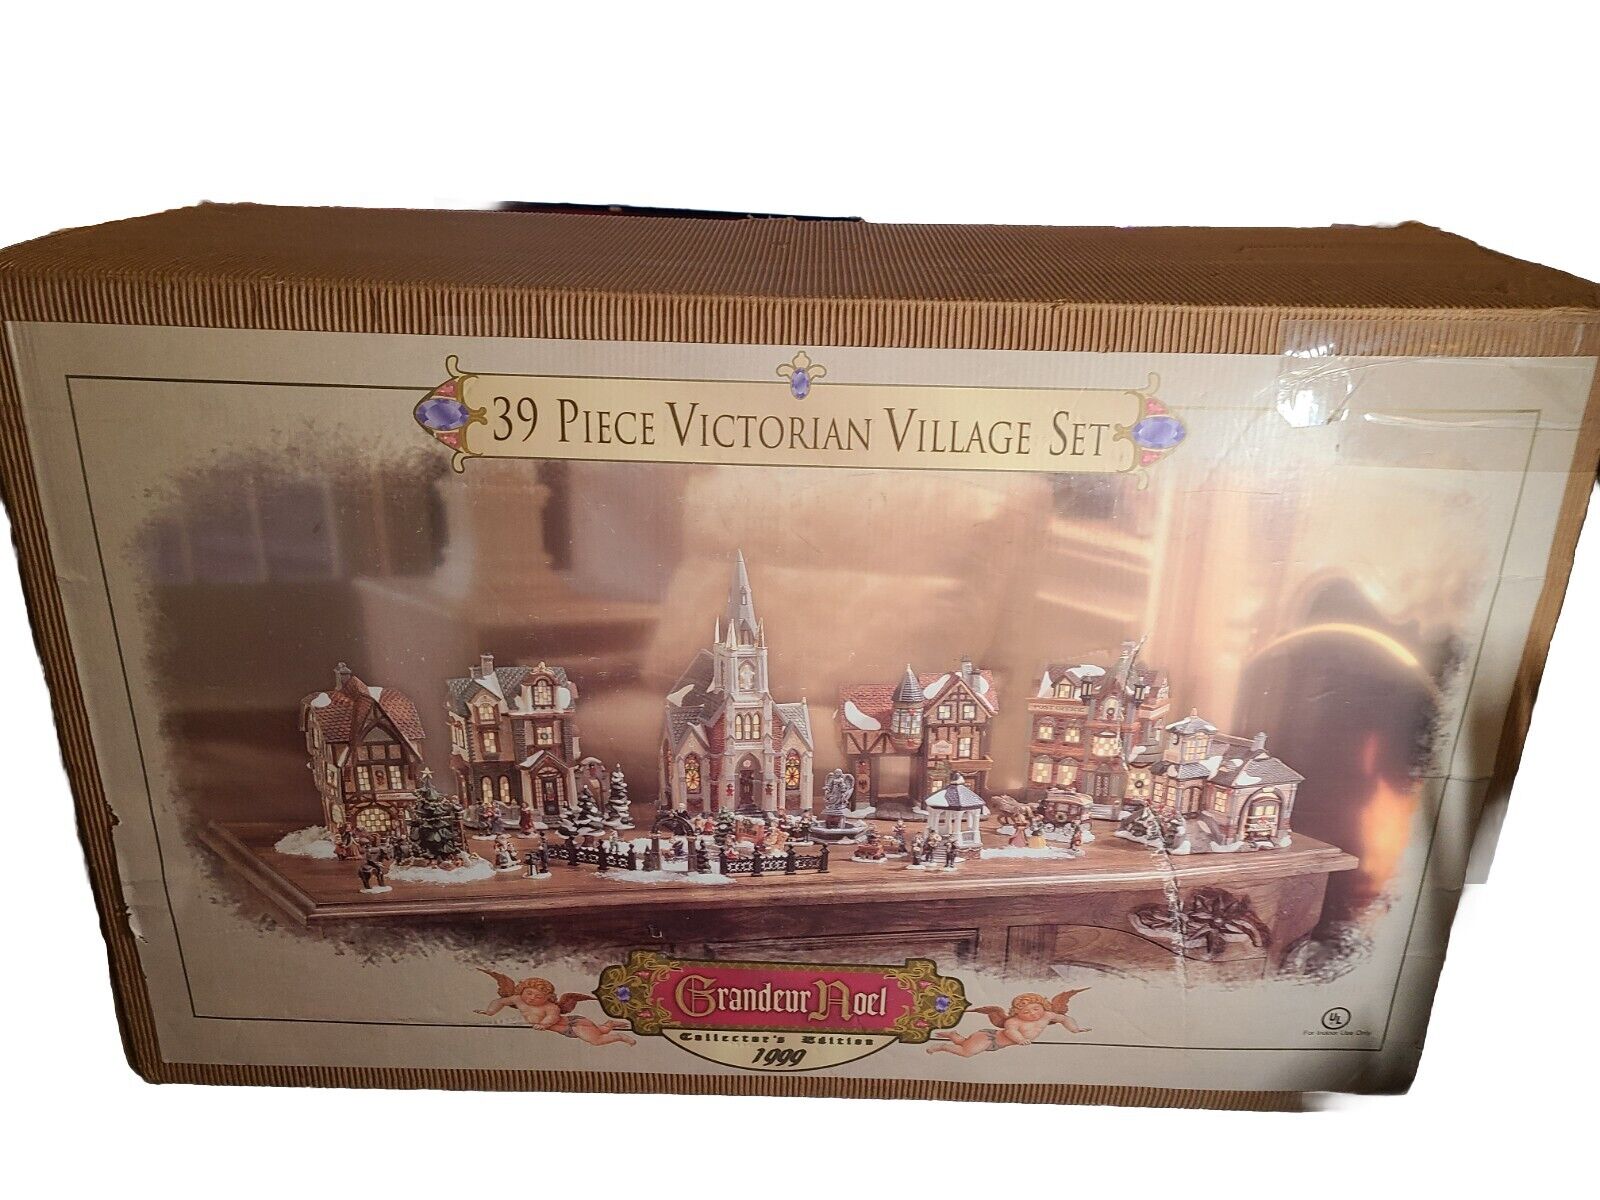 39 Piece Victorian Village Set-Grandeur Noel - Collector's Edition 1999